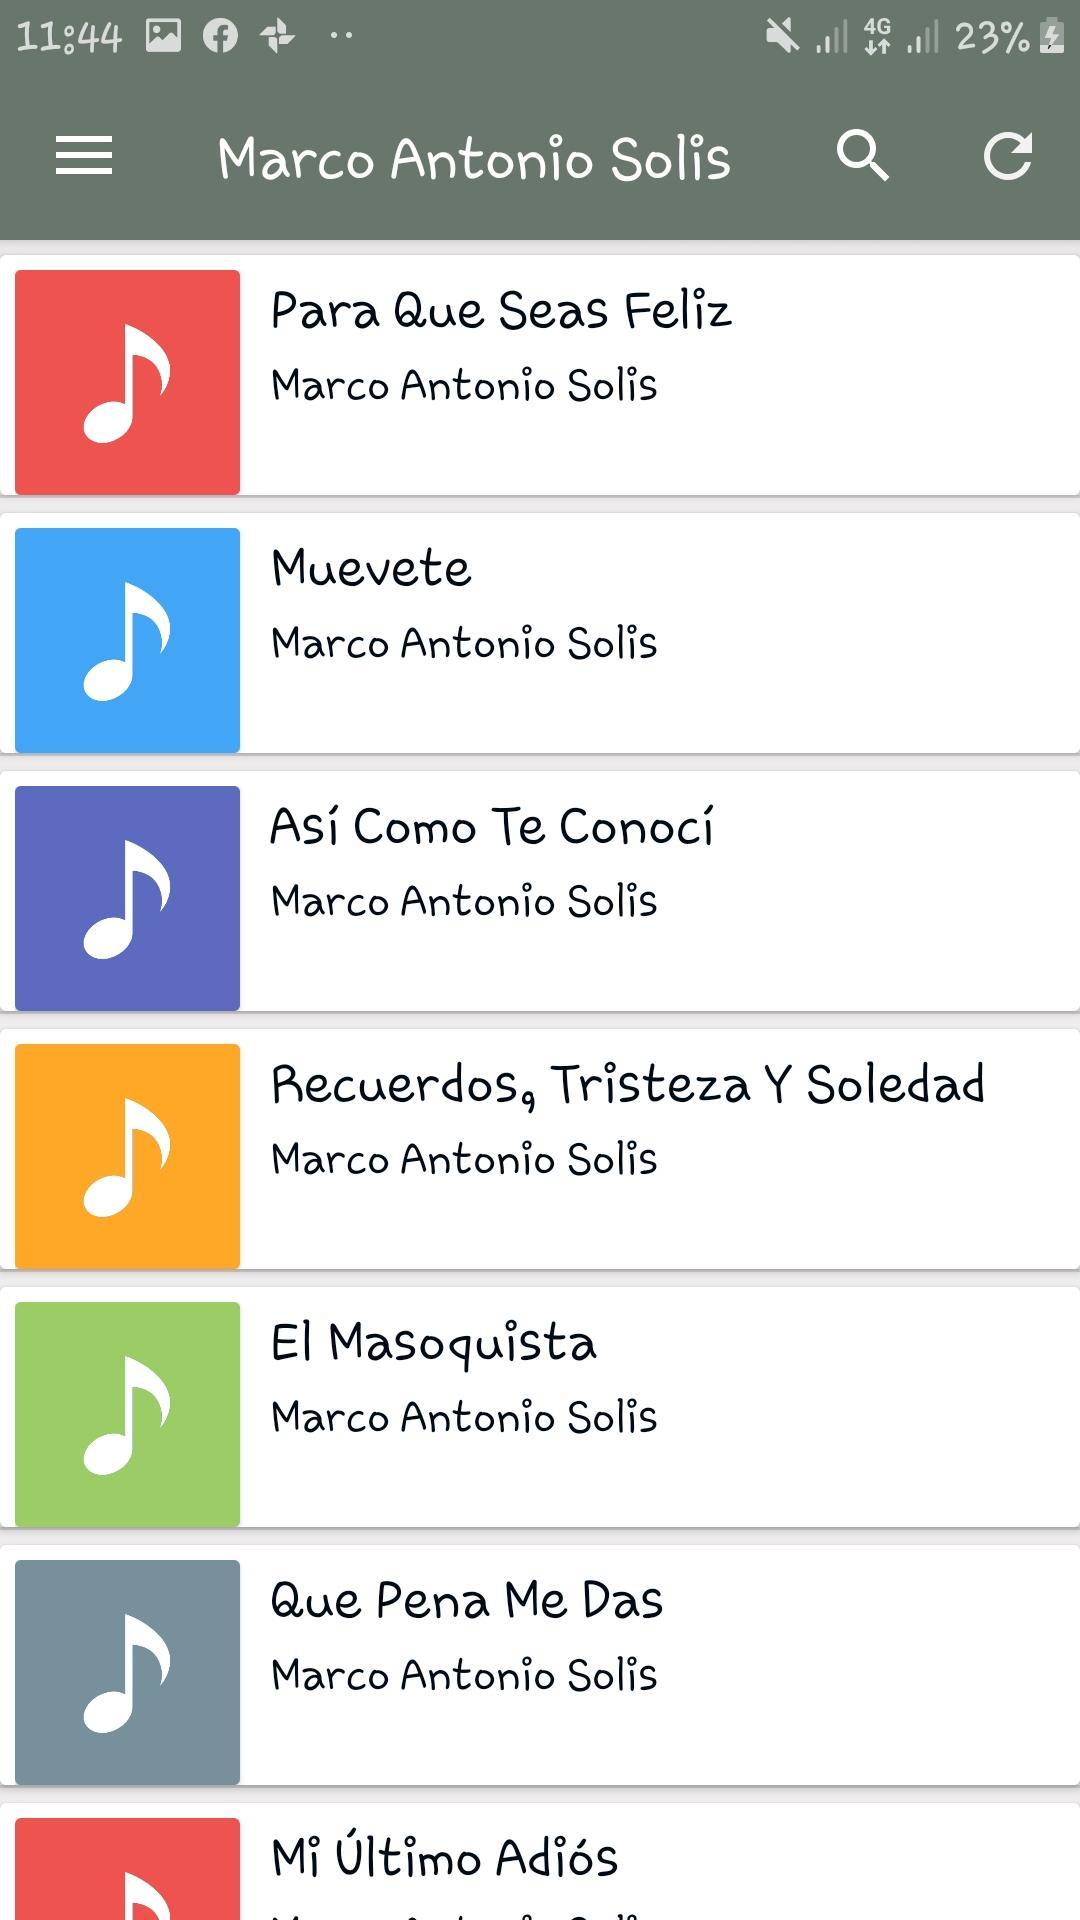 Marco Antonio Solis letra descargar musica APK for Android Download